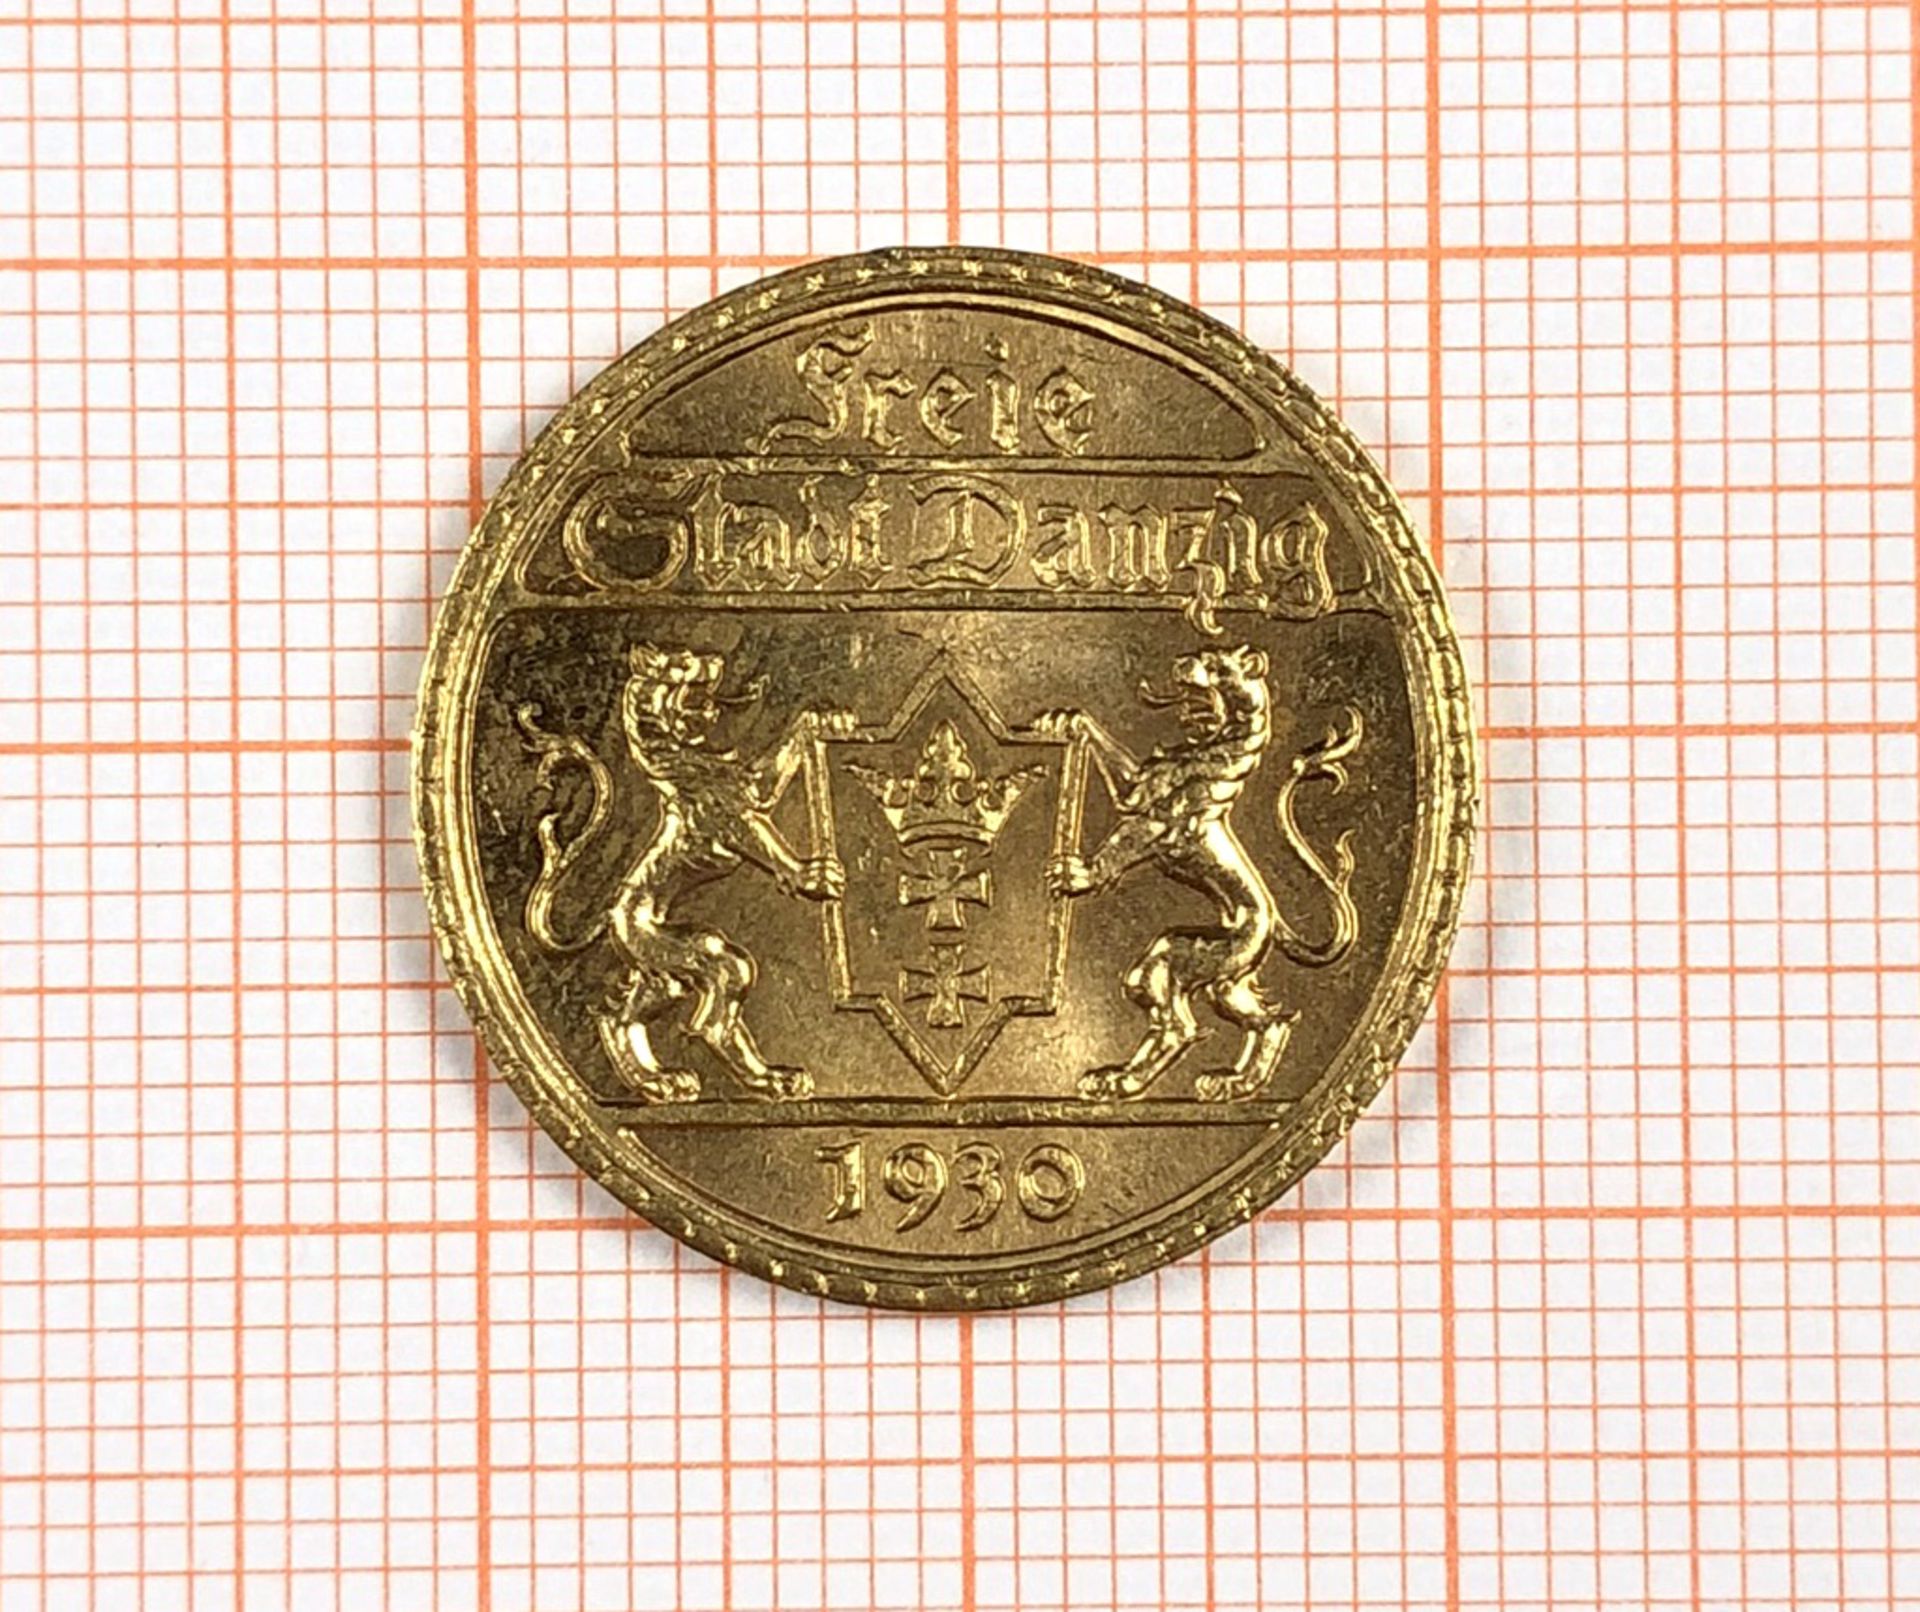 Danzig 25 Gulden 1930 Gold (J. D11).Auflage 4000 Exemplare. Wohl vorzüglicher Stempelglanz. 8 - Bild 5 aus 6